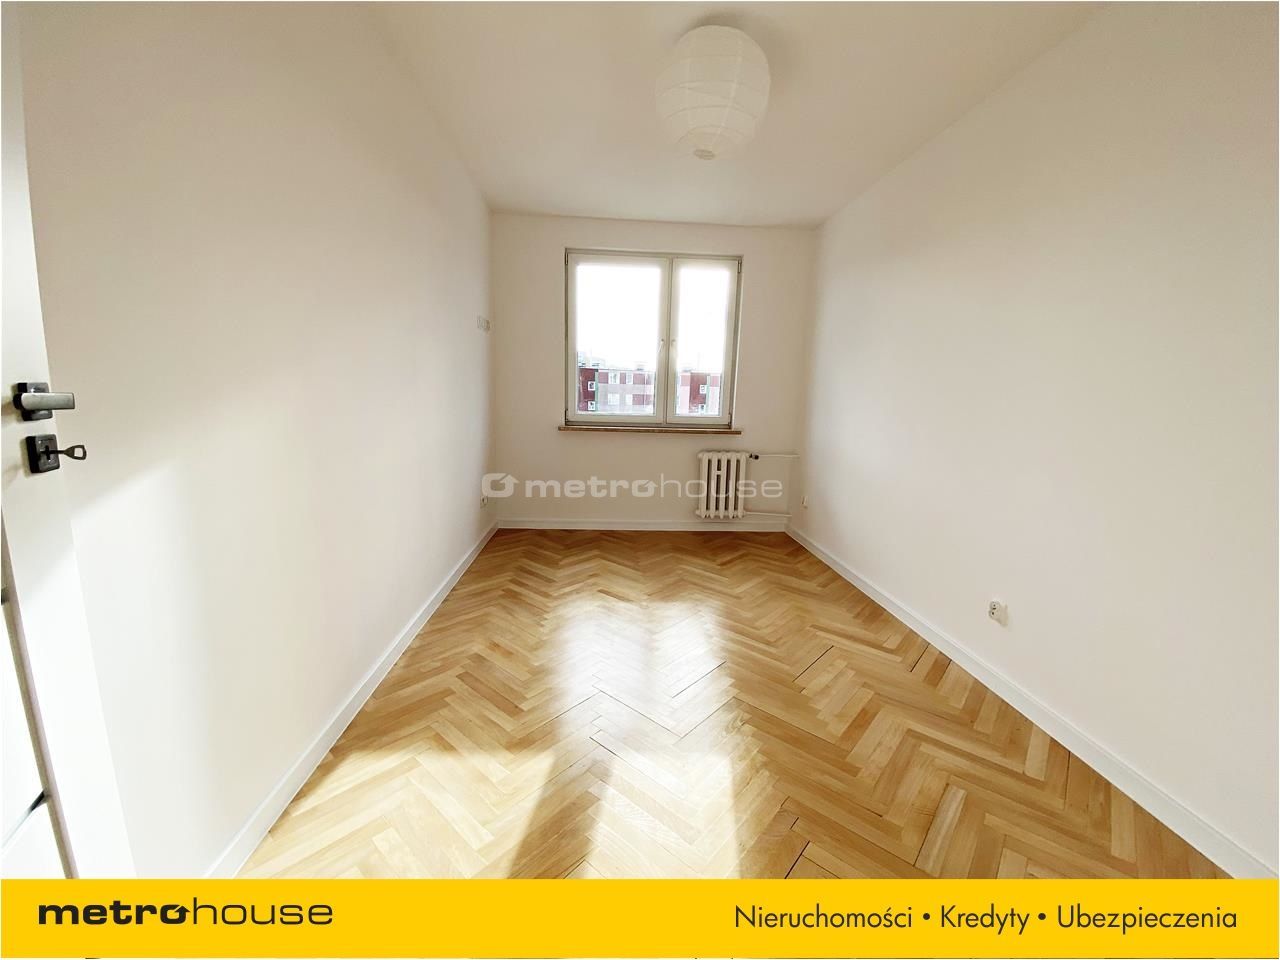 Mieszkanie na sprzedaż, Gdańsk, Przymorze, 3 pokoje, 54 mkw, za 749000 zł: zdjęcie 93185894